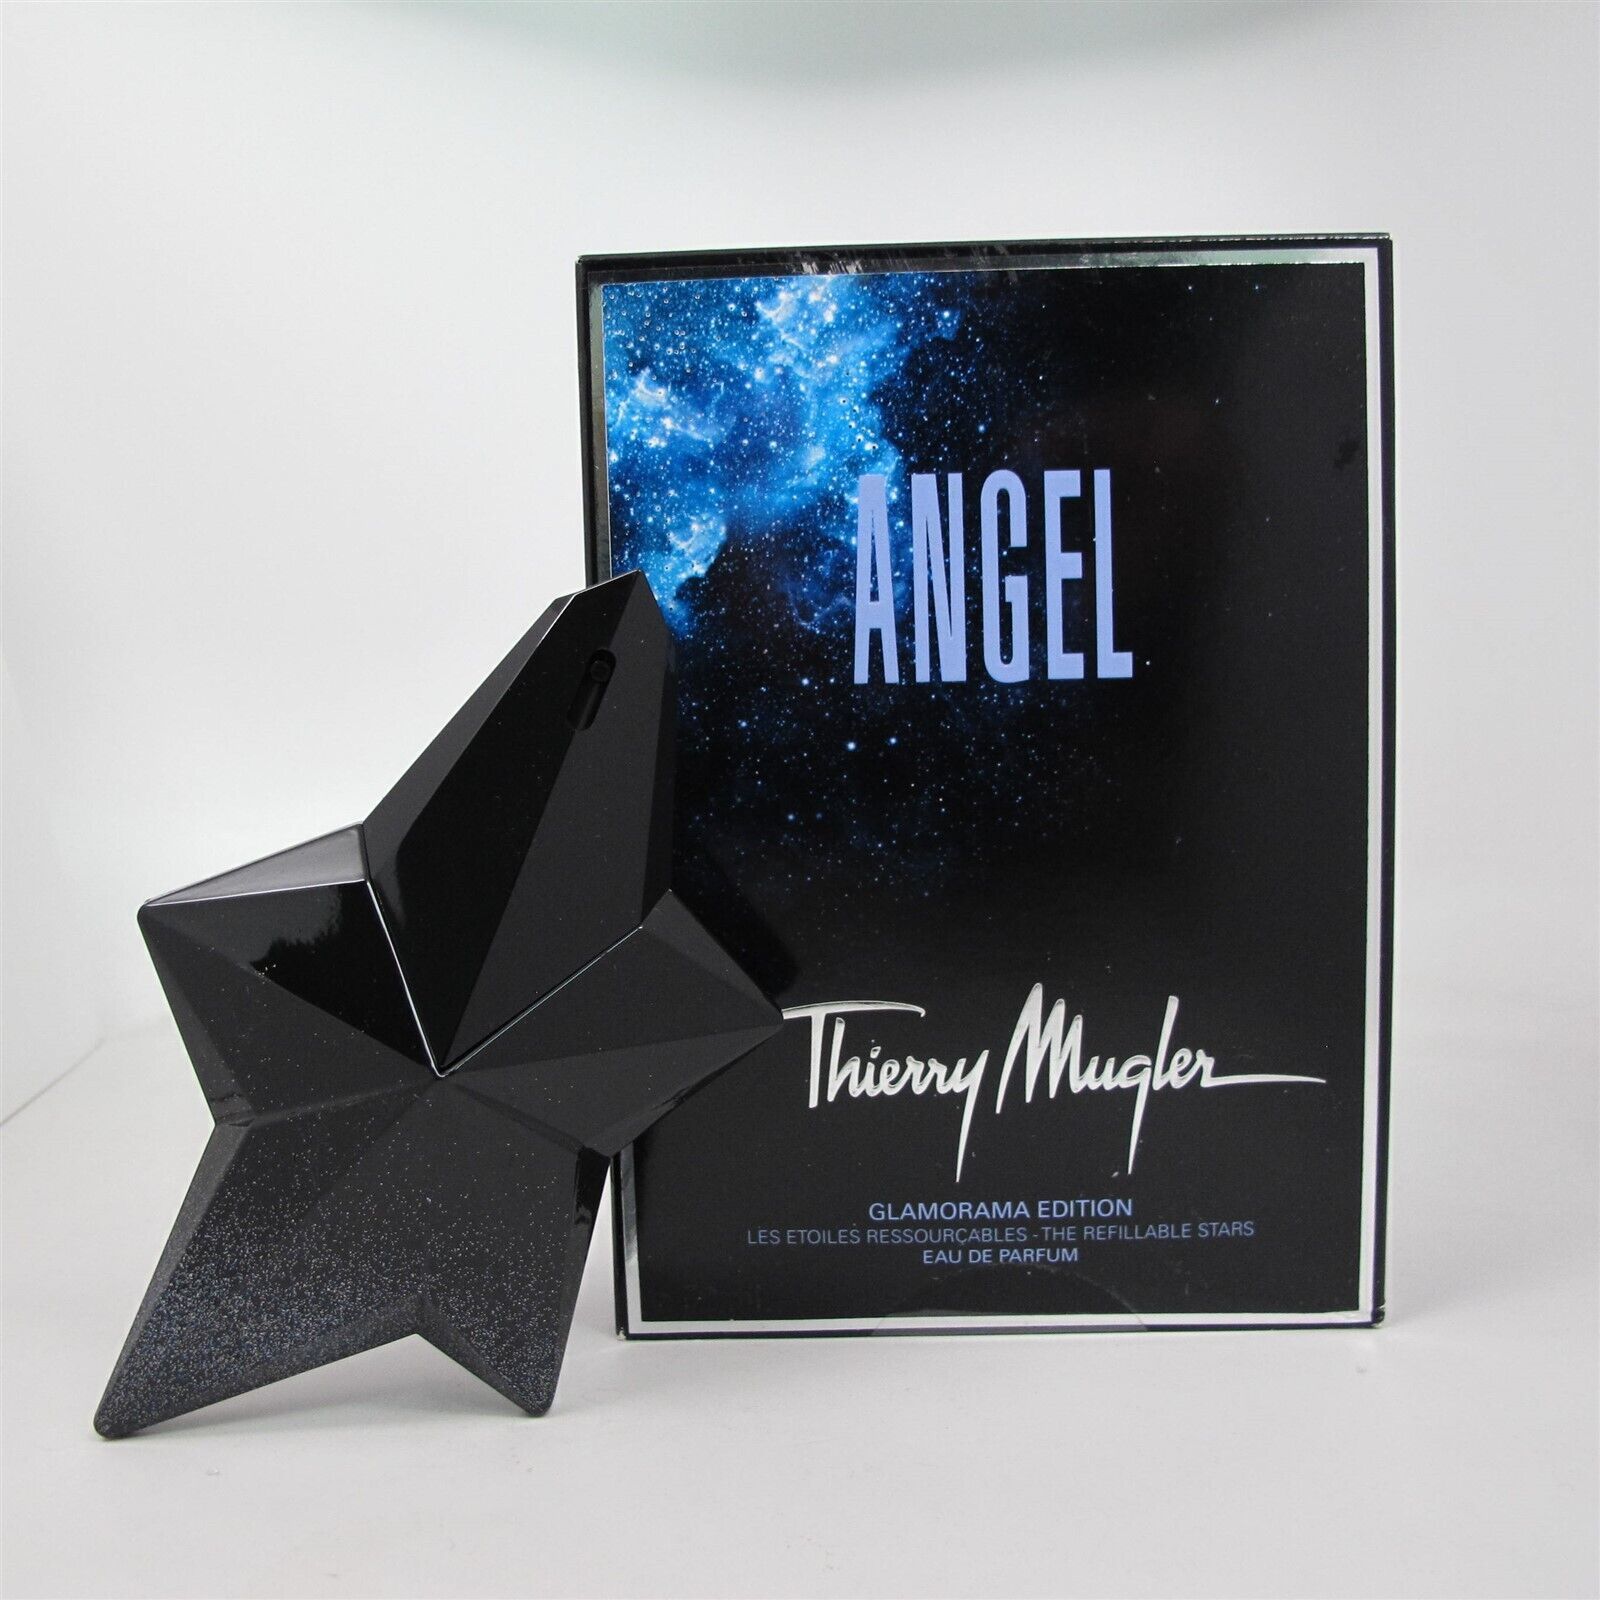 ANGEL Glamorama Edition by Thierry Mugler 50 ml/ 1.7 oz EDP Spray *Damaged Box* - $118.79